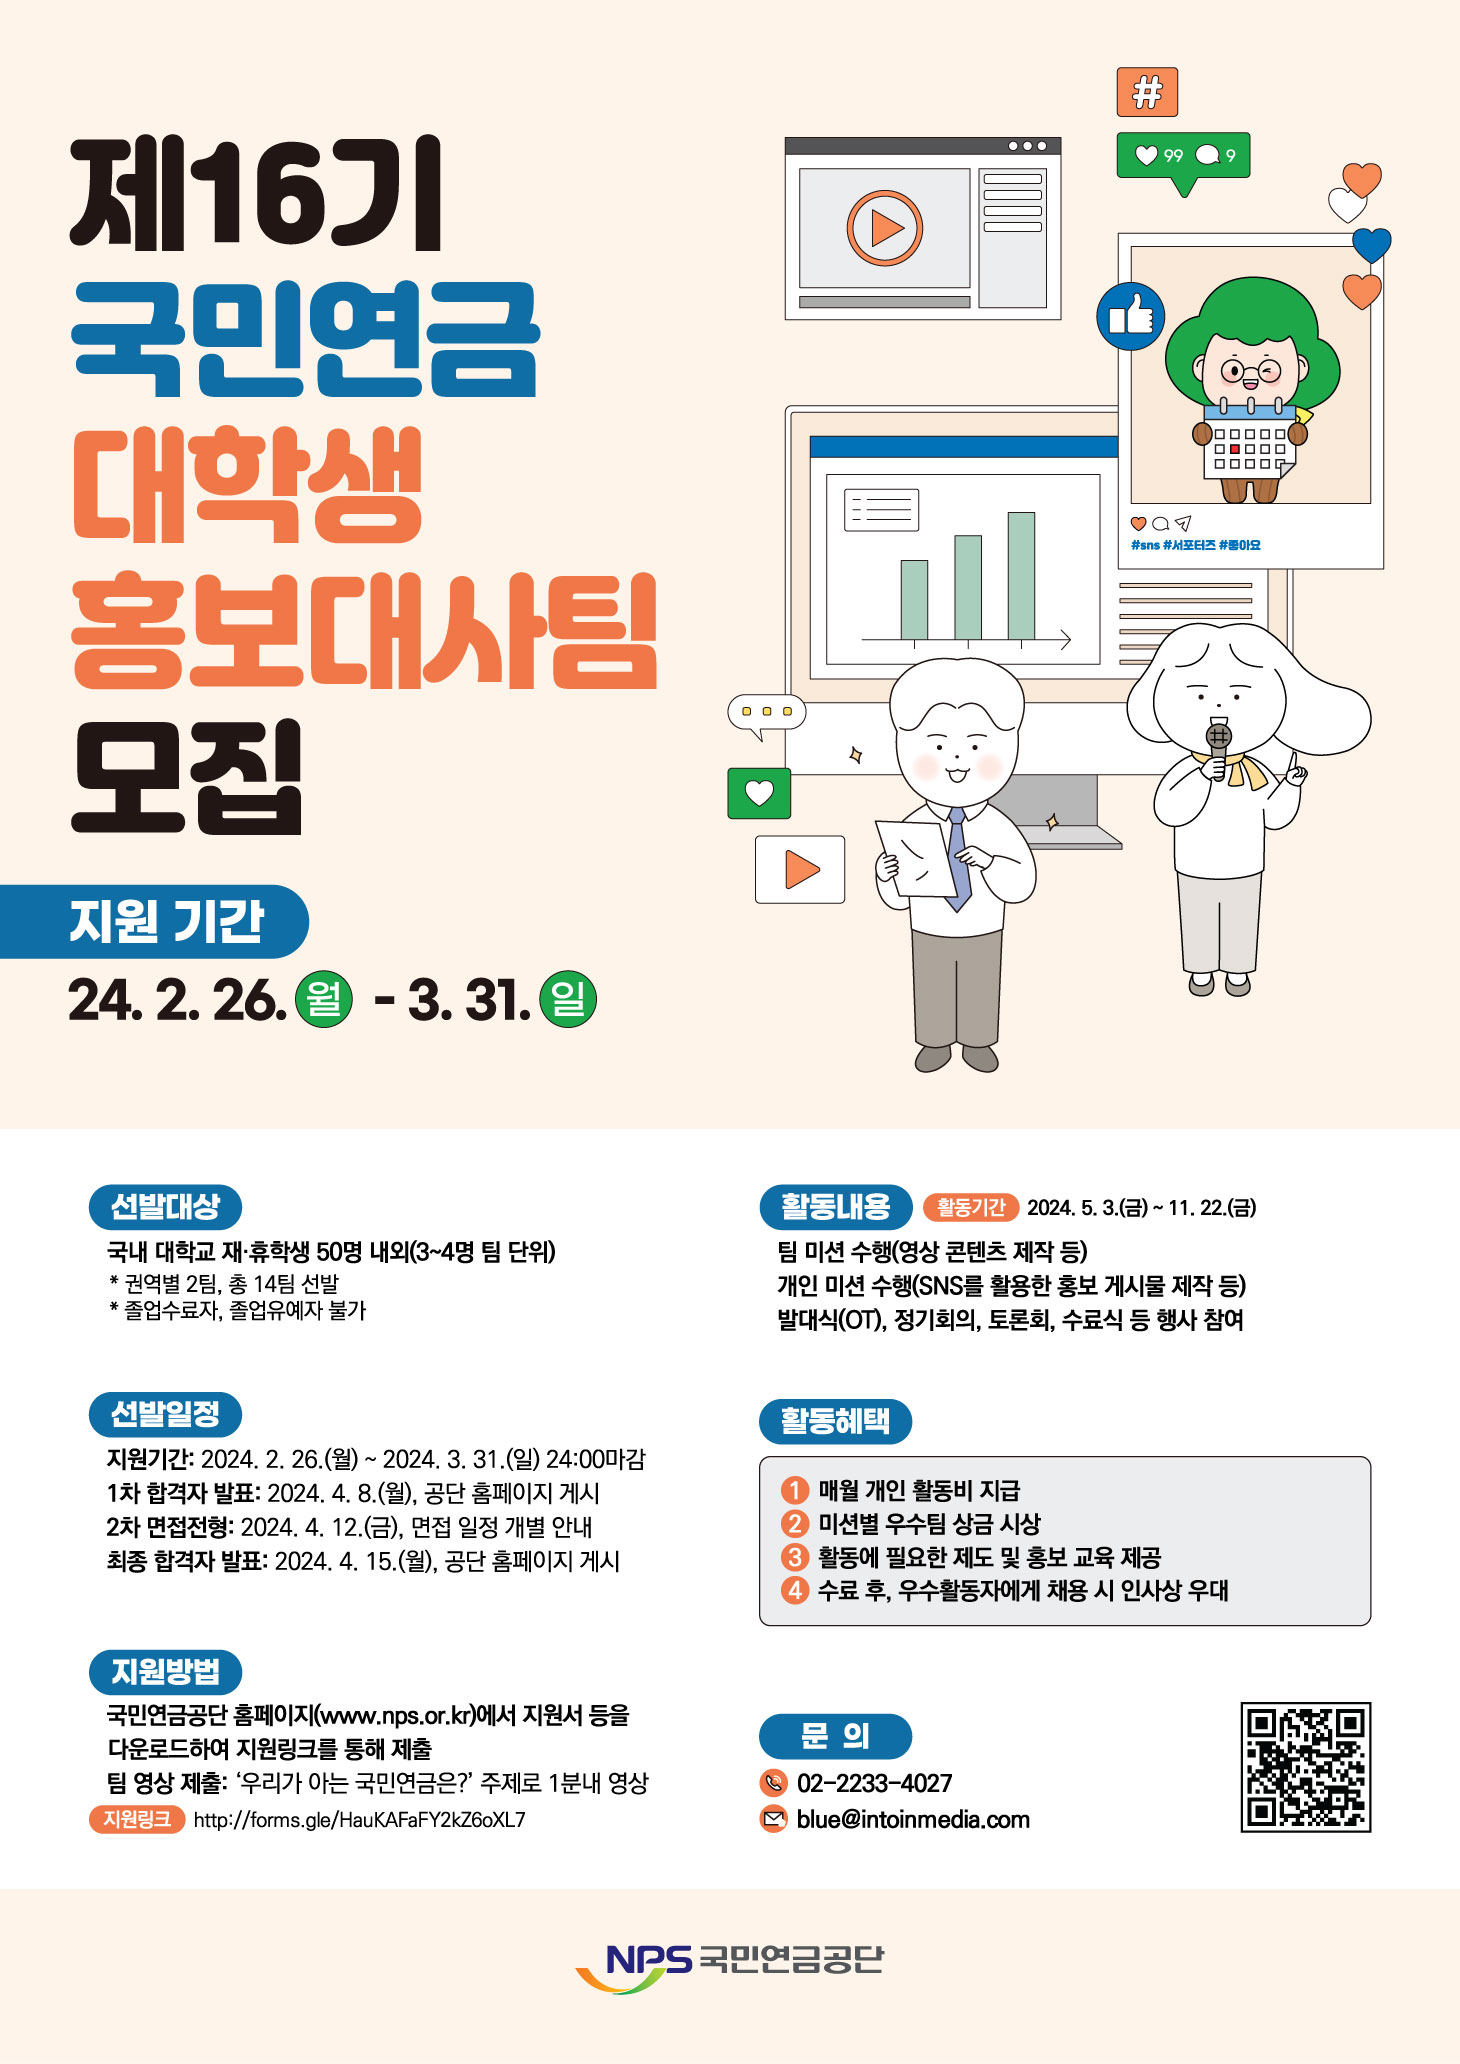 제16기 국민연금 대학생 홍보대사팀 모집
~2024.03.31(일)
02-2233-4027
